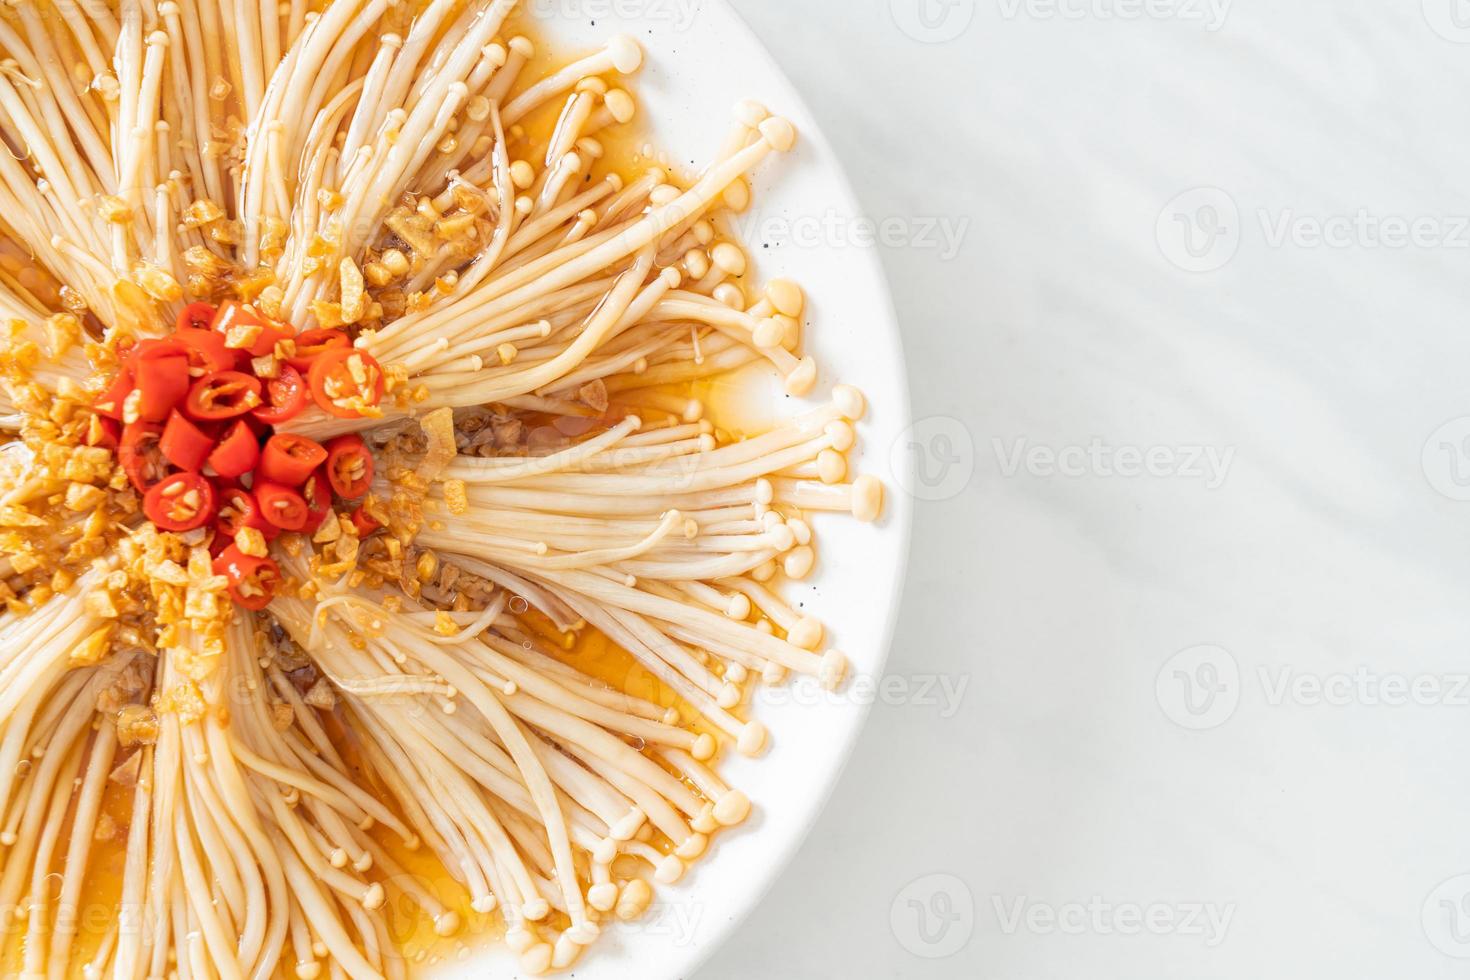 funghi aghi dorati al vapore fatti in casa o enokitake con salsa di soia, peperoncino e aglio foto